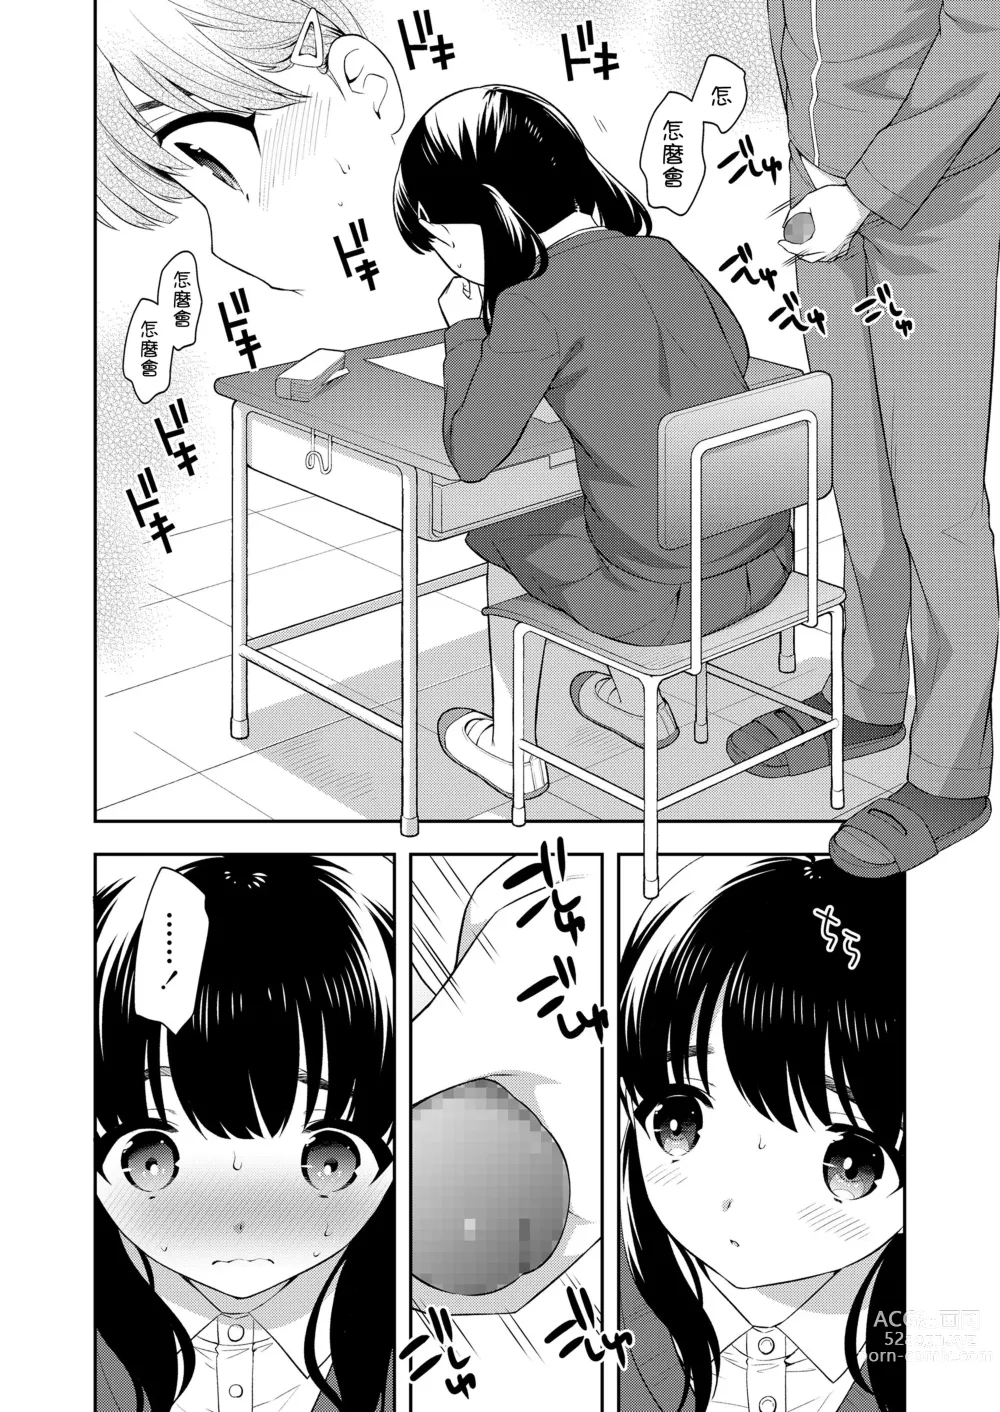 Page 4 of manga Sensei no Iinari